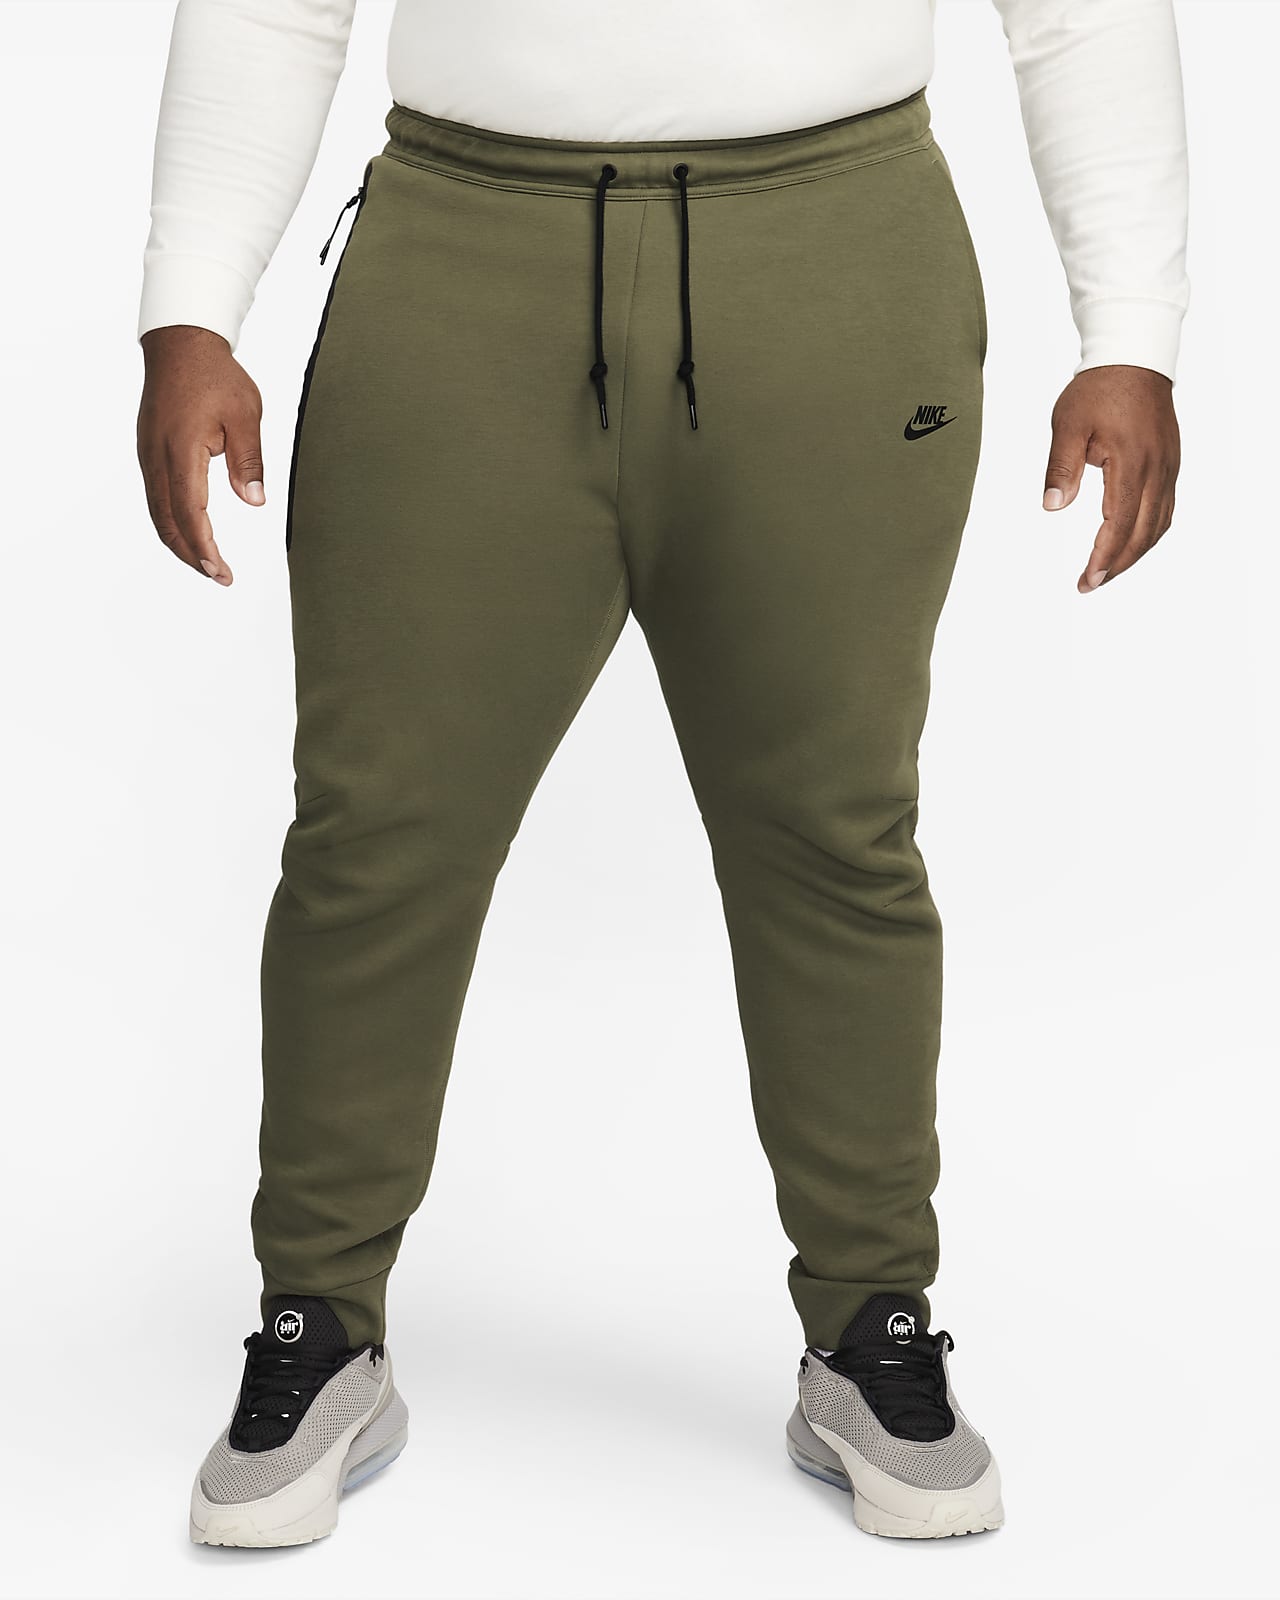 Sportswear Tech Fleece Men's Joggers. Nike